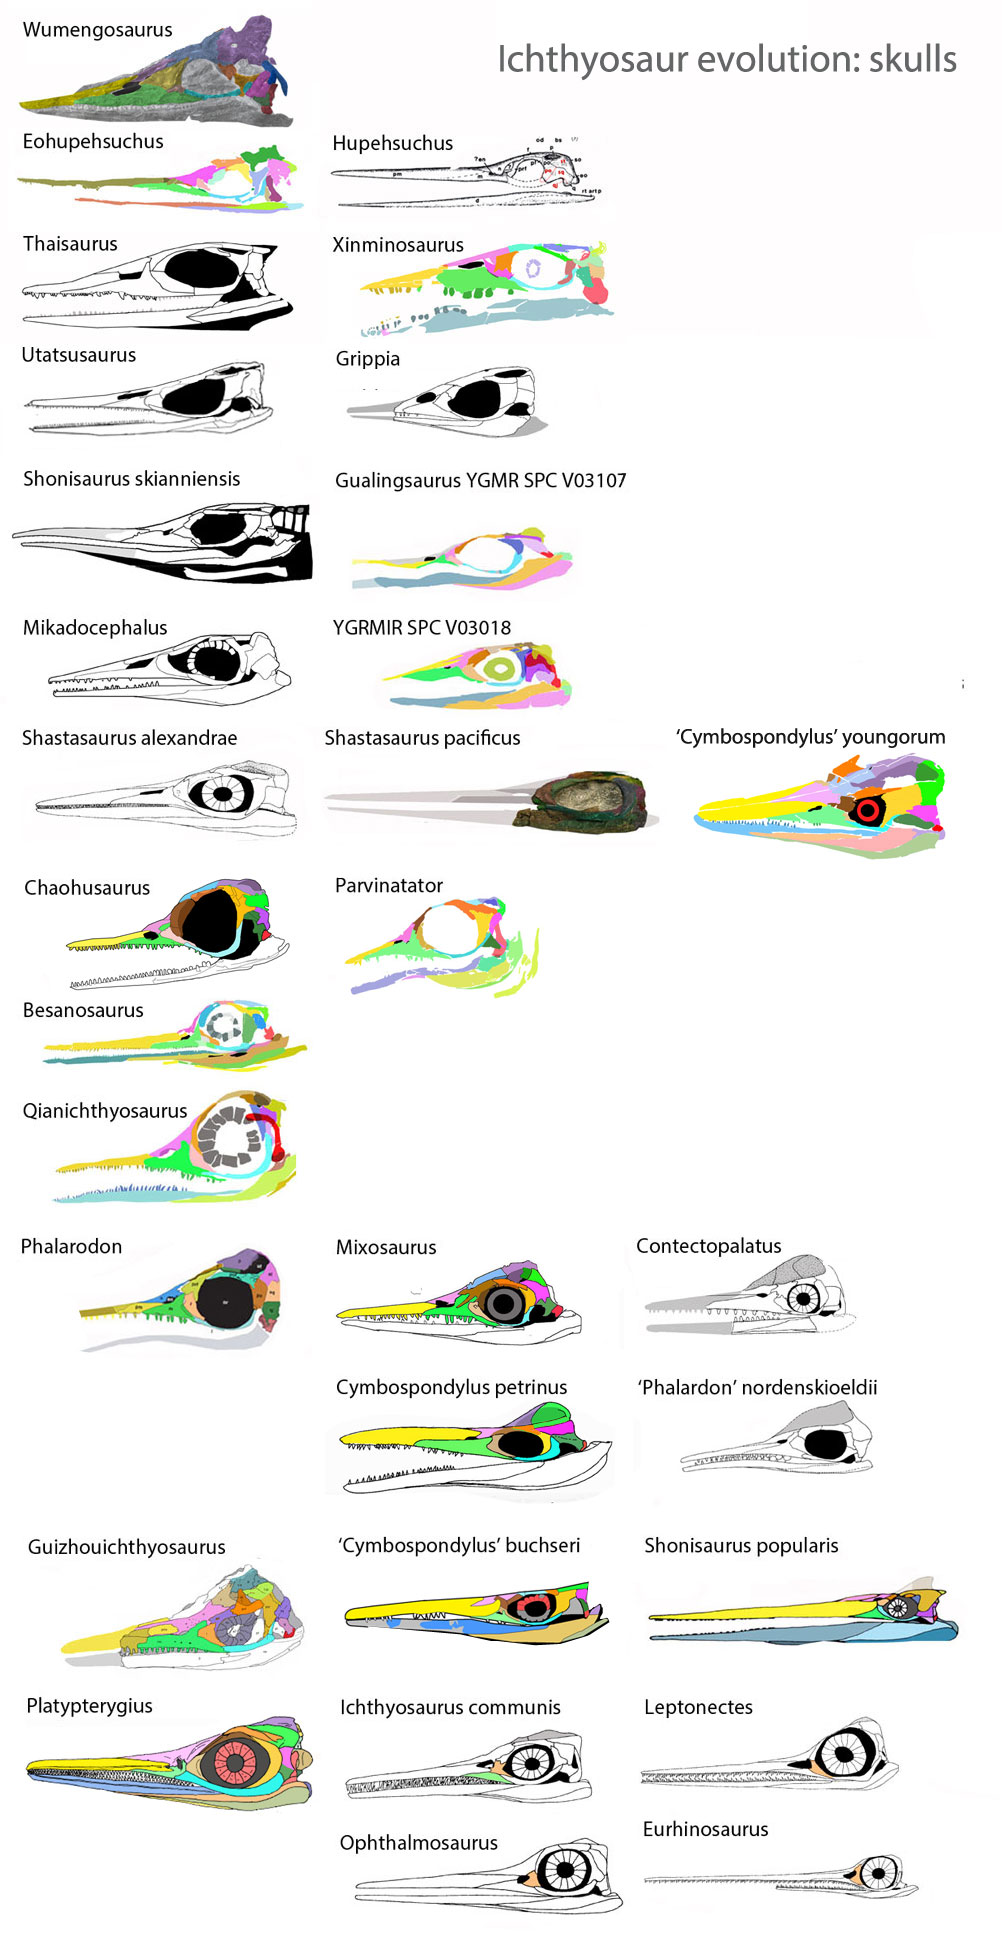 Ichthyosaur skulls in phylogenetic order